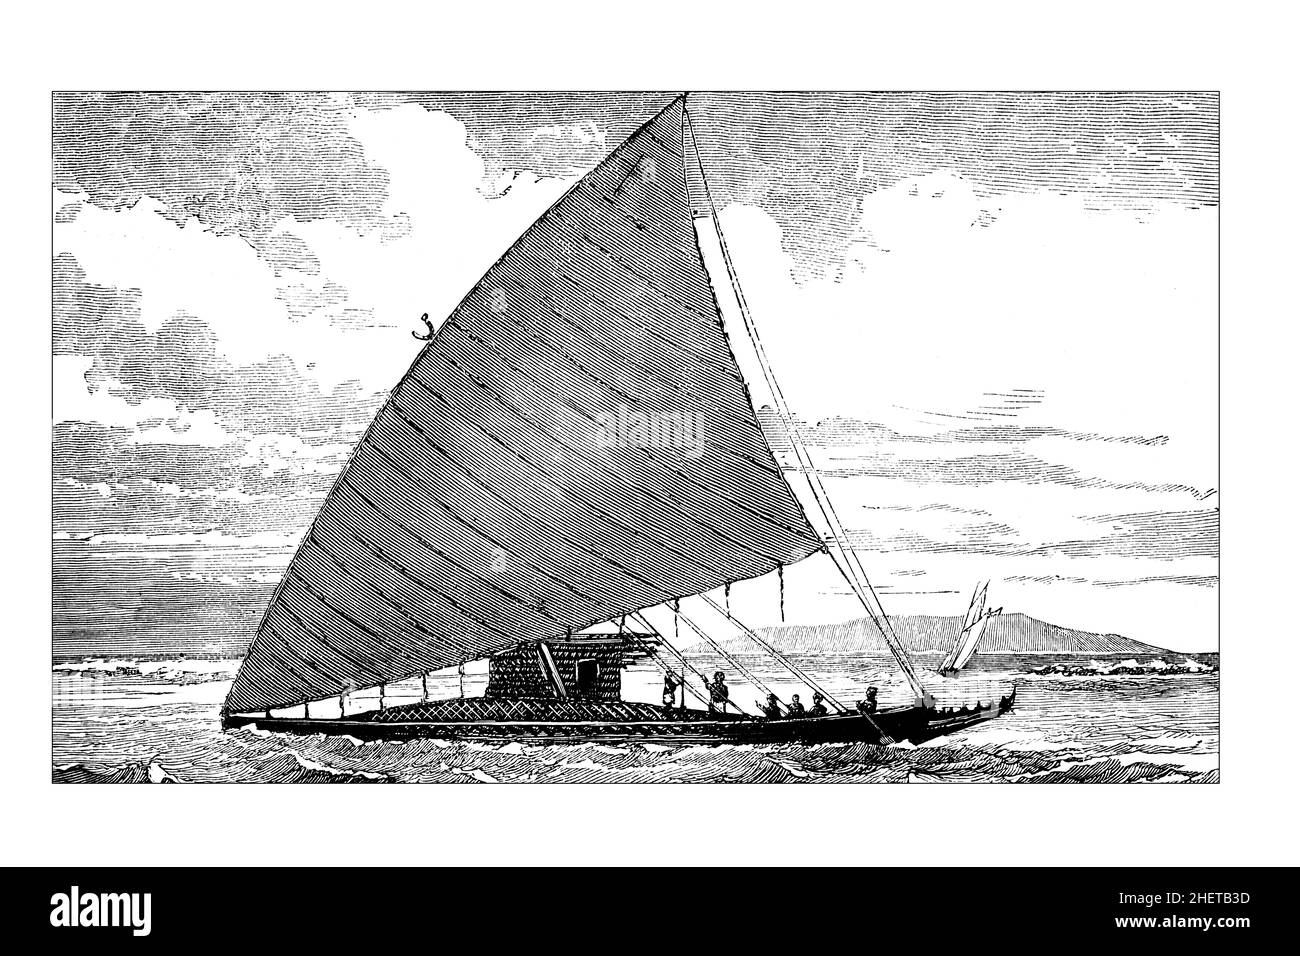 Canoë commercial interinsulaire Fijian Camakau, illustration de lignes d'Afrique centrale, du Japon et des Fidji publié en 1882 par Hodder & Stoughton, Londres Banque D'Images